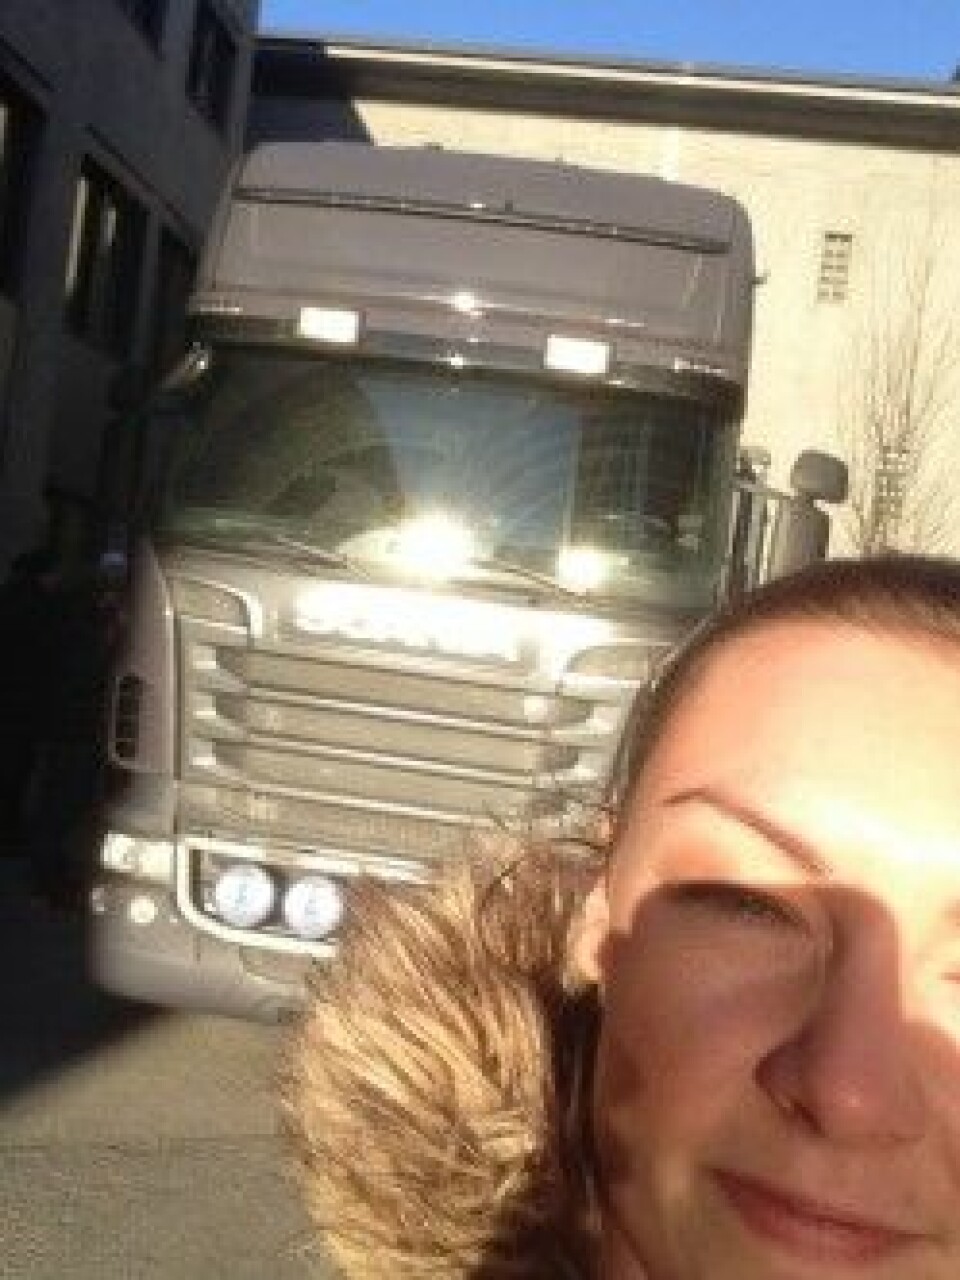 Populært besøk fra Kongsberg Automotive: NTNU-student Lene Finsveen tok selfie foran en av lastebilene fra bedriften. (Foto: Lene Finsveen)